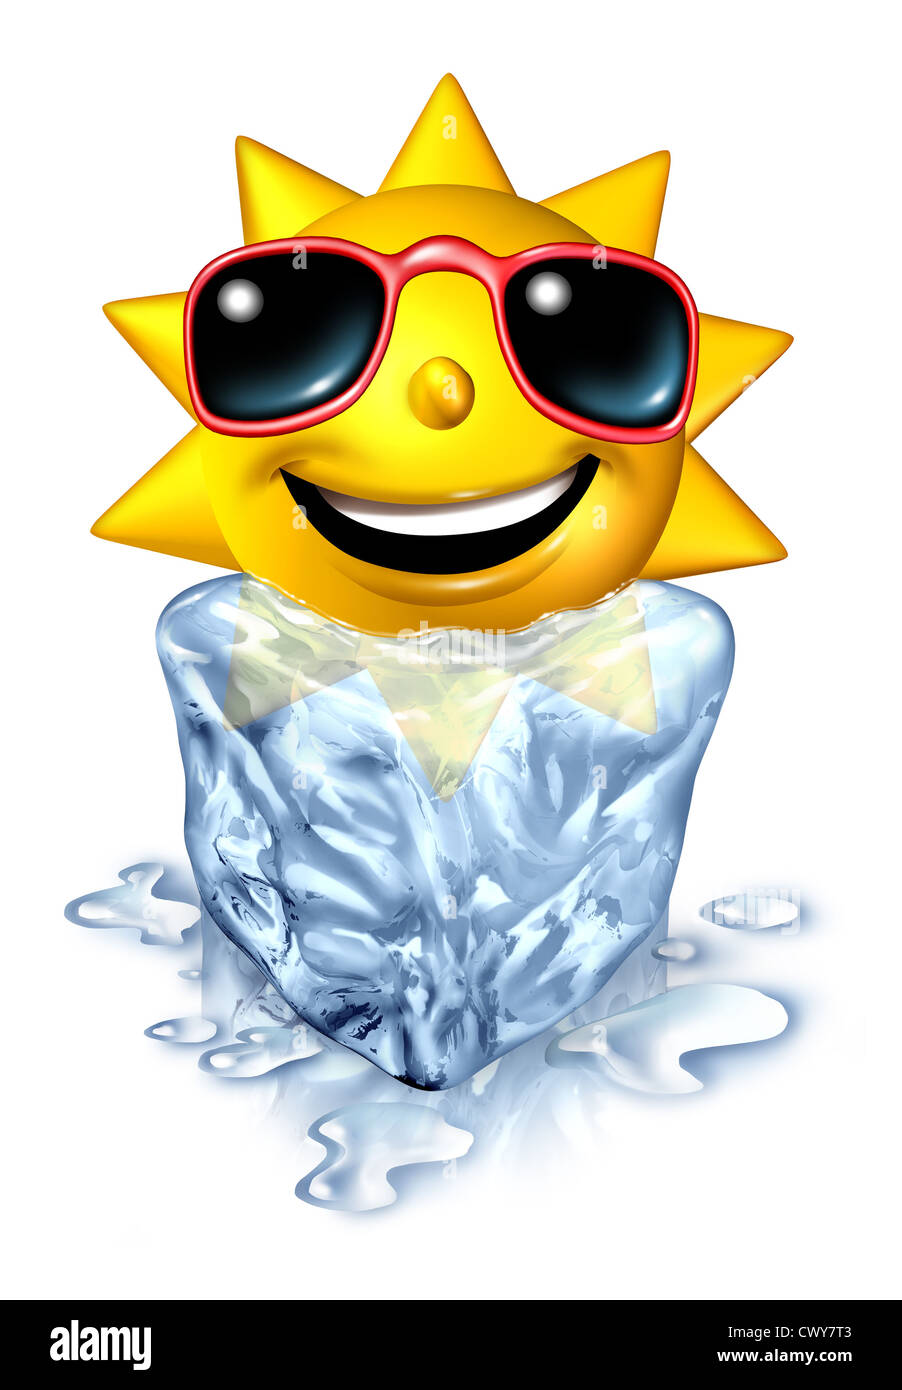 Erfrischung-Relief-Konzept mit heißen Urlaub Sommer Sonne Charakter in einem gefrorenen kalt Eisblock schmelzen als ein gekühltes abkühlen Stockfoto